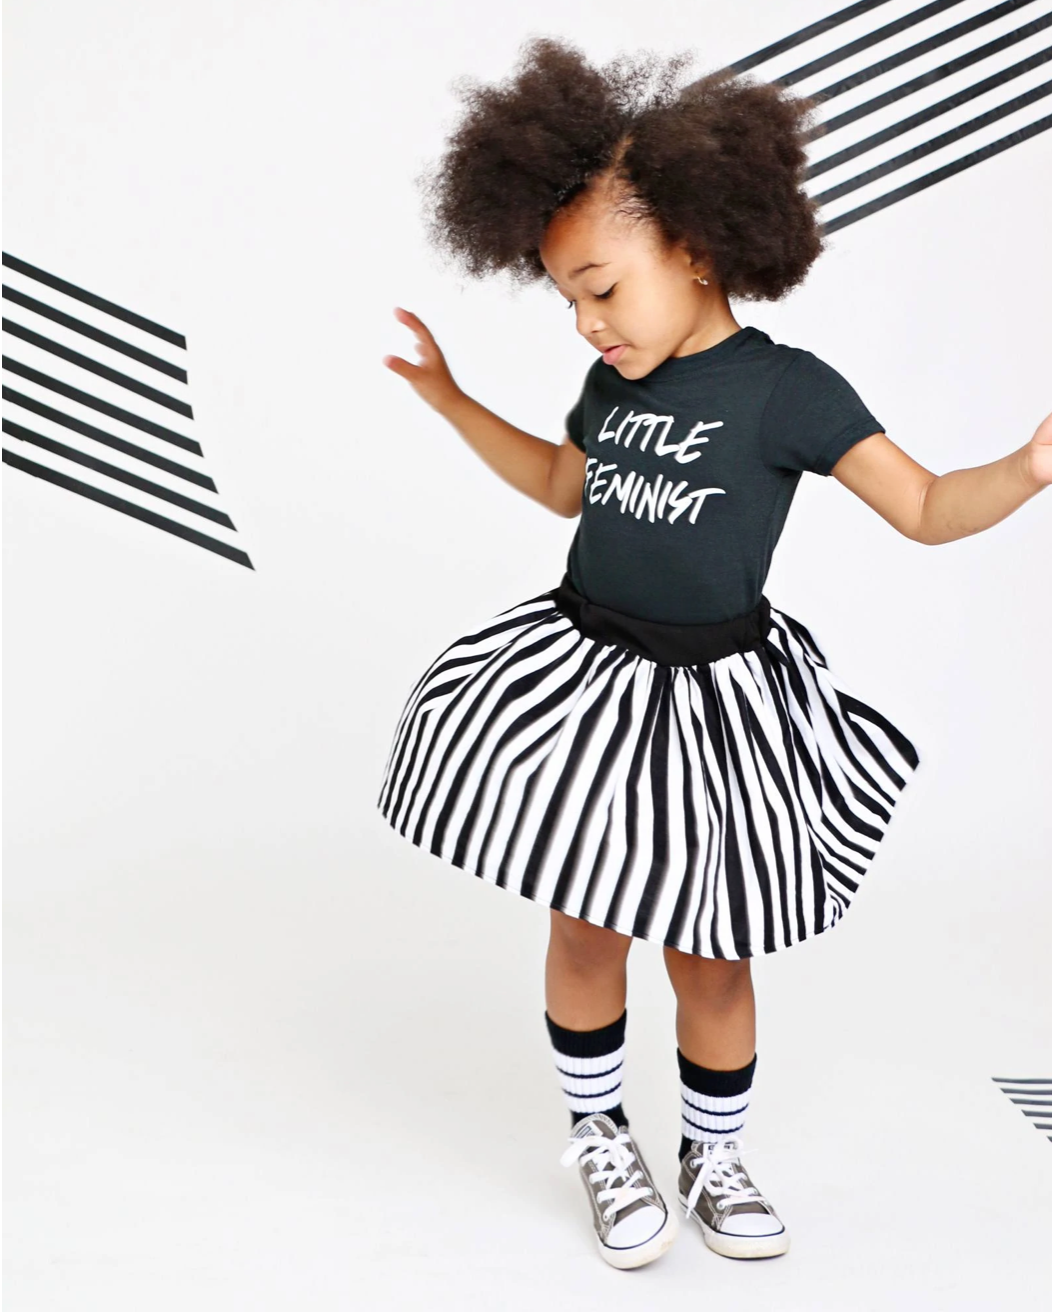 Little Feminist Short Sleeve Black Kids T-Shirt - Twinkle Twinkle Little One